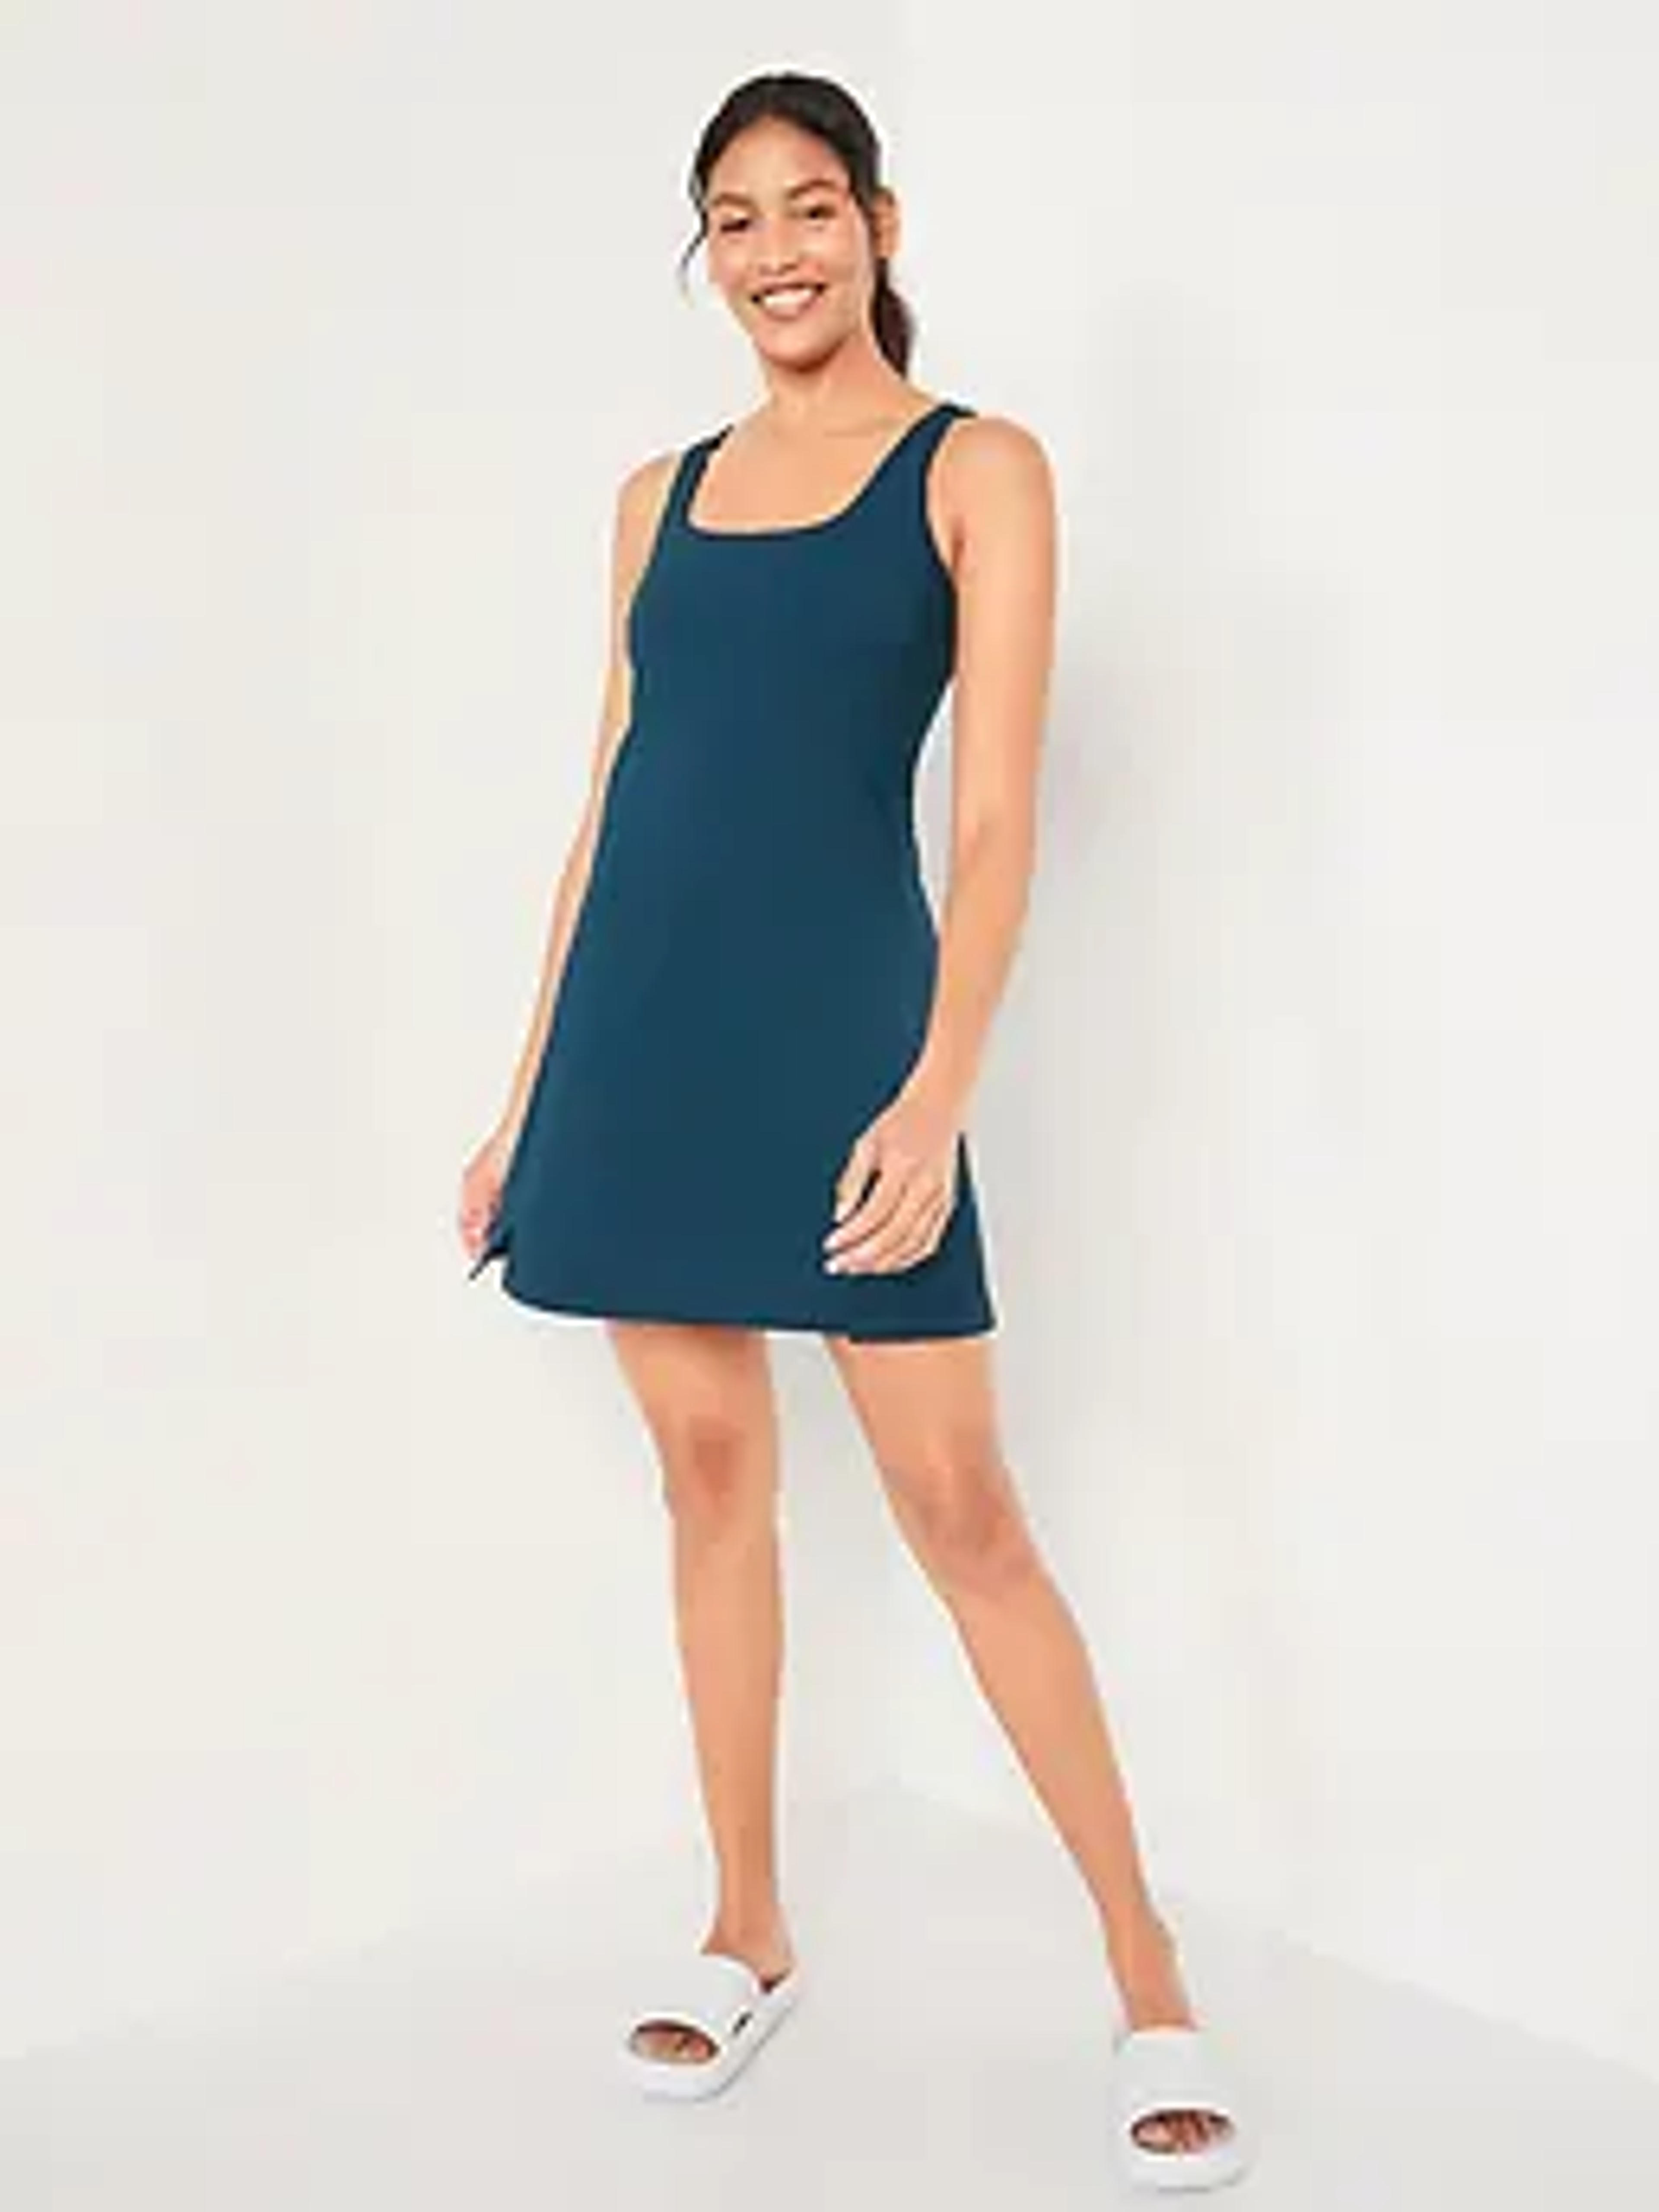 PowerSoft Sleeveless Shelf-Bra Support Dress for Women